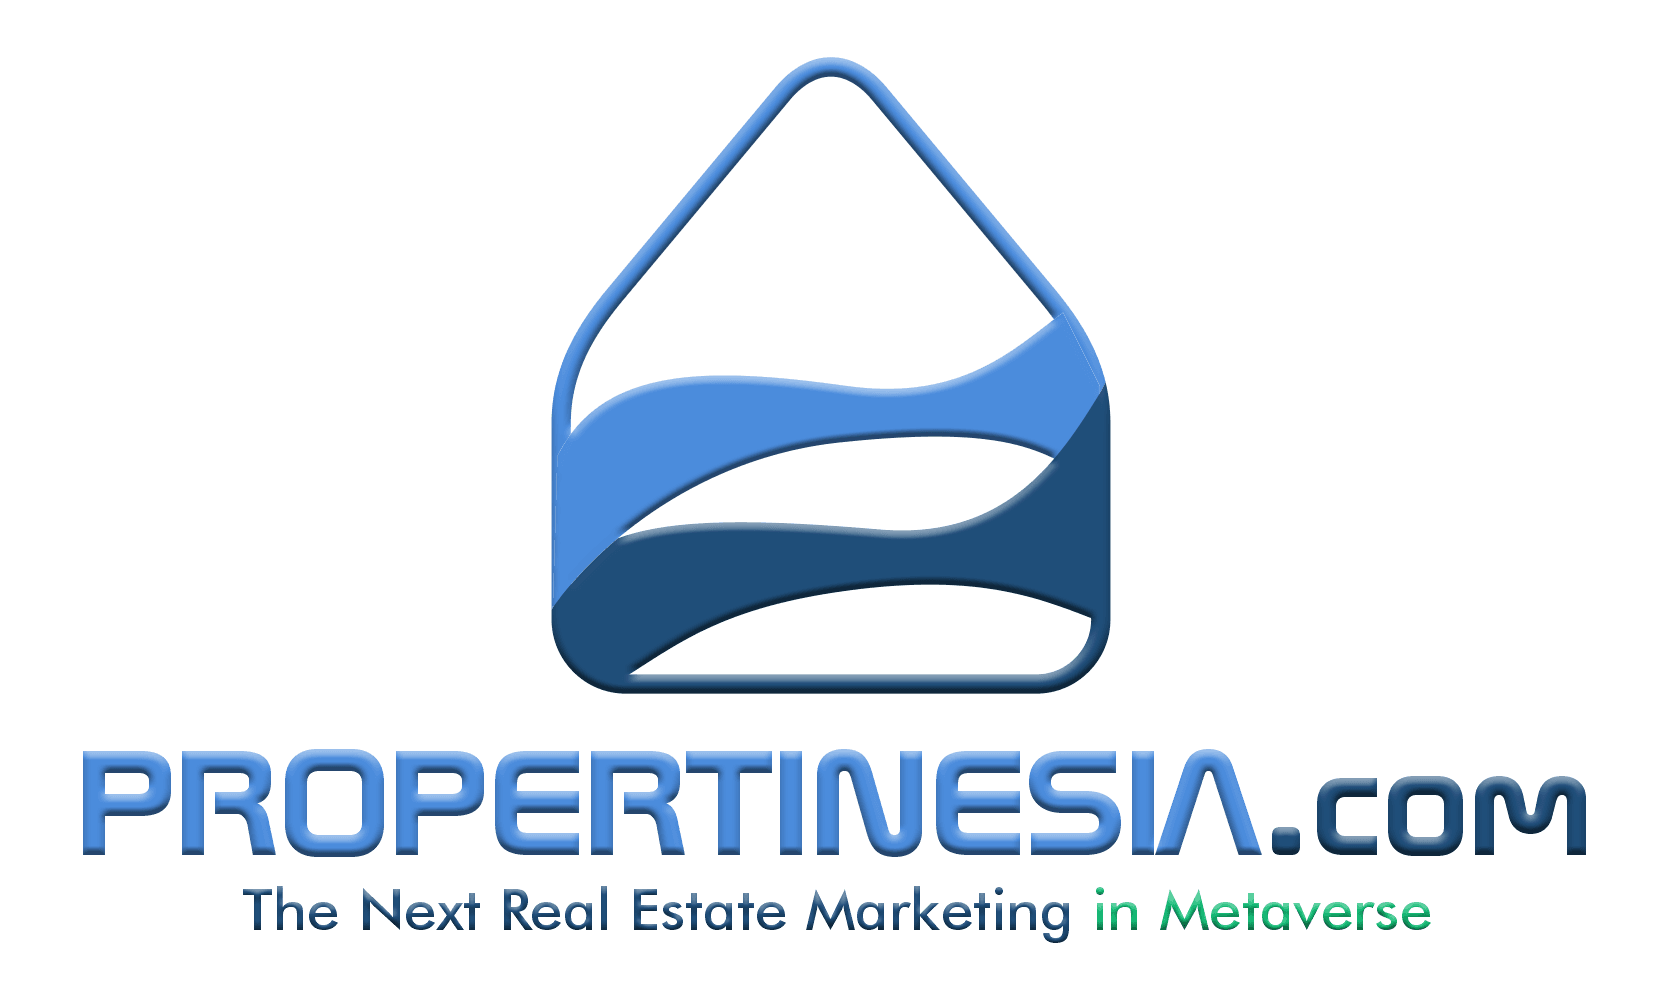 Brand_and_Domain_Propertinesia_com